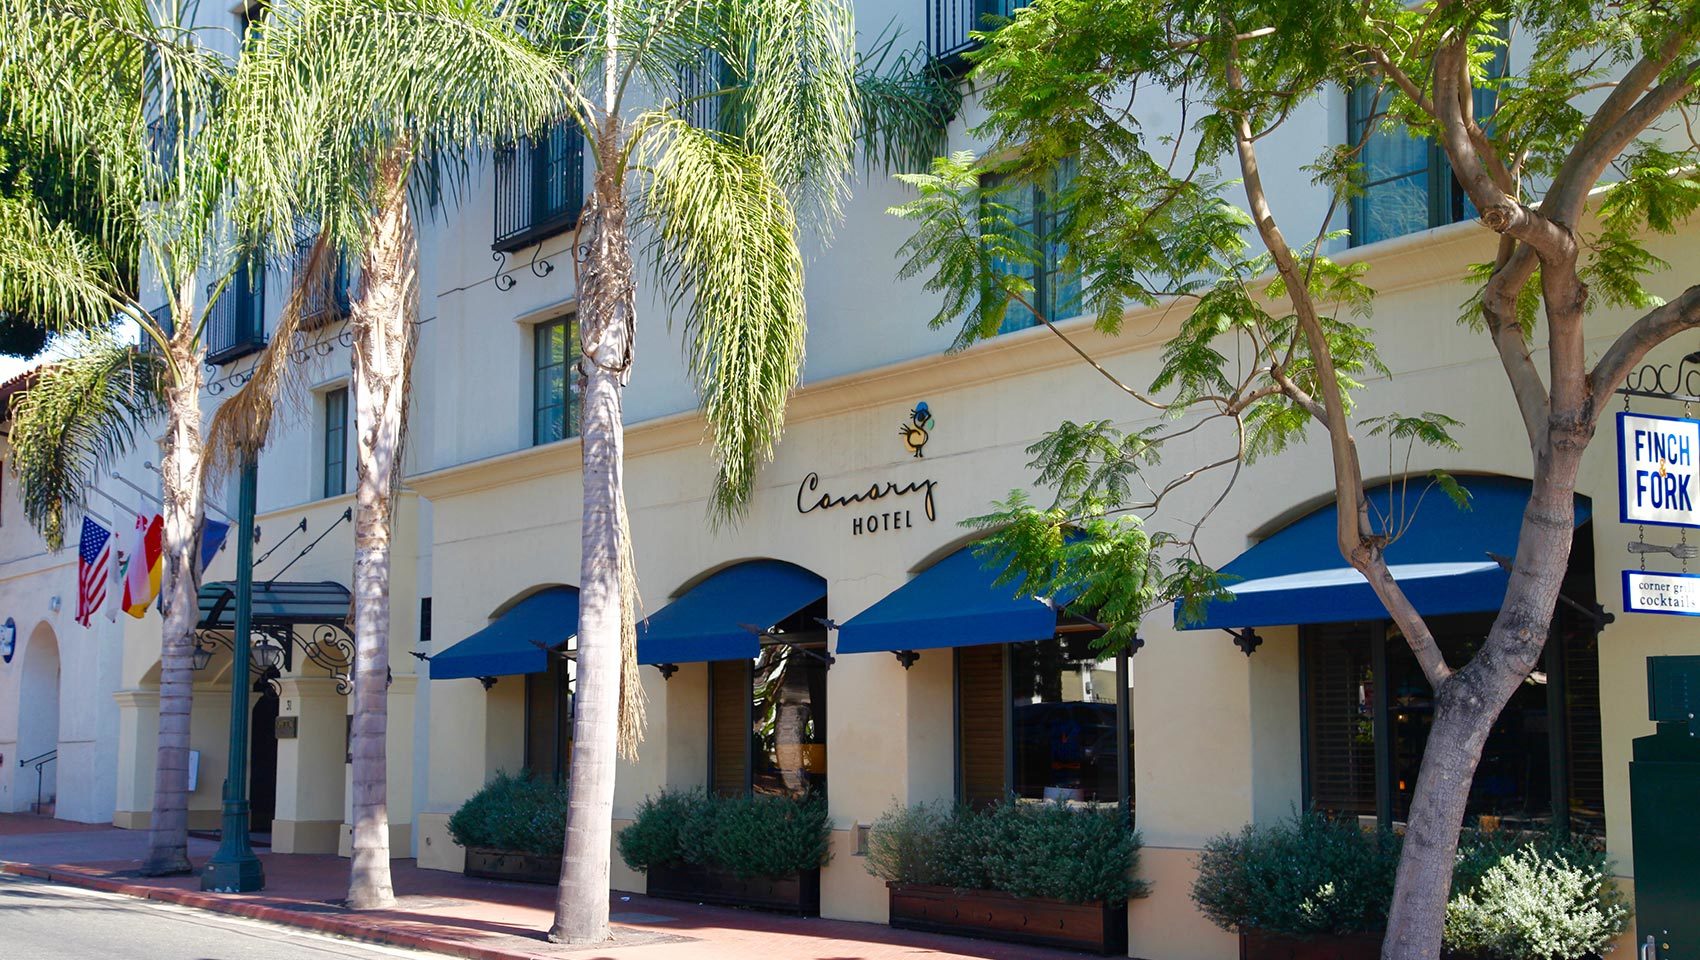 Photo of Kimpton Canary Hotel, Santa Barbara, CA